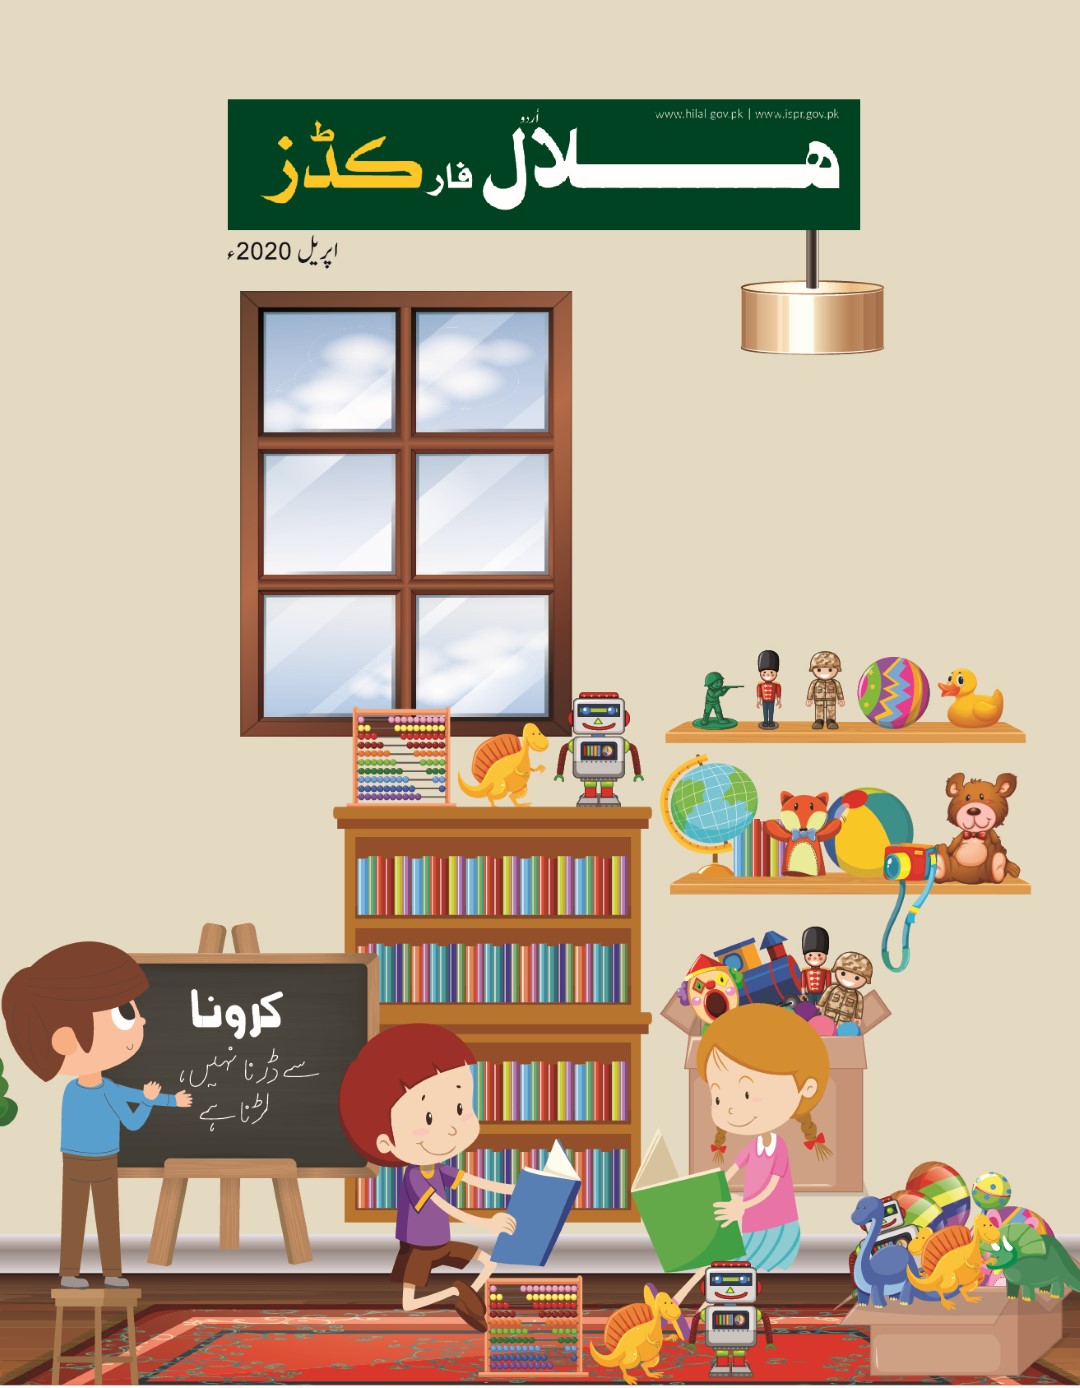 Hilal for Kids Urdu April 2020